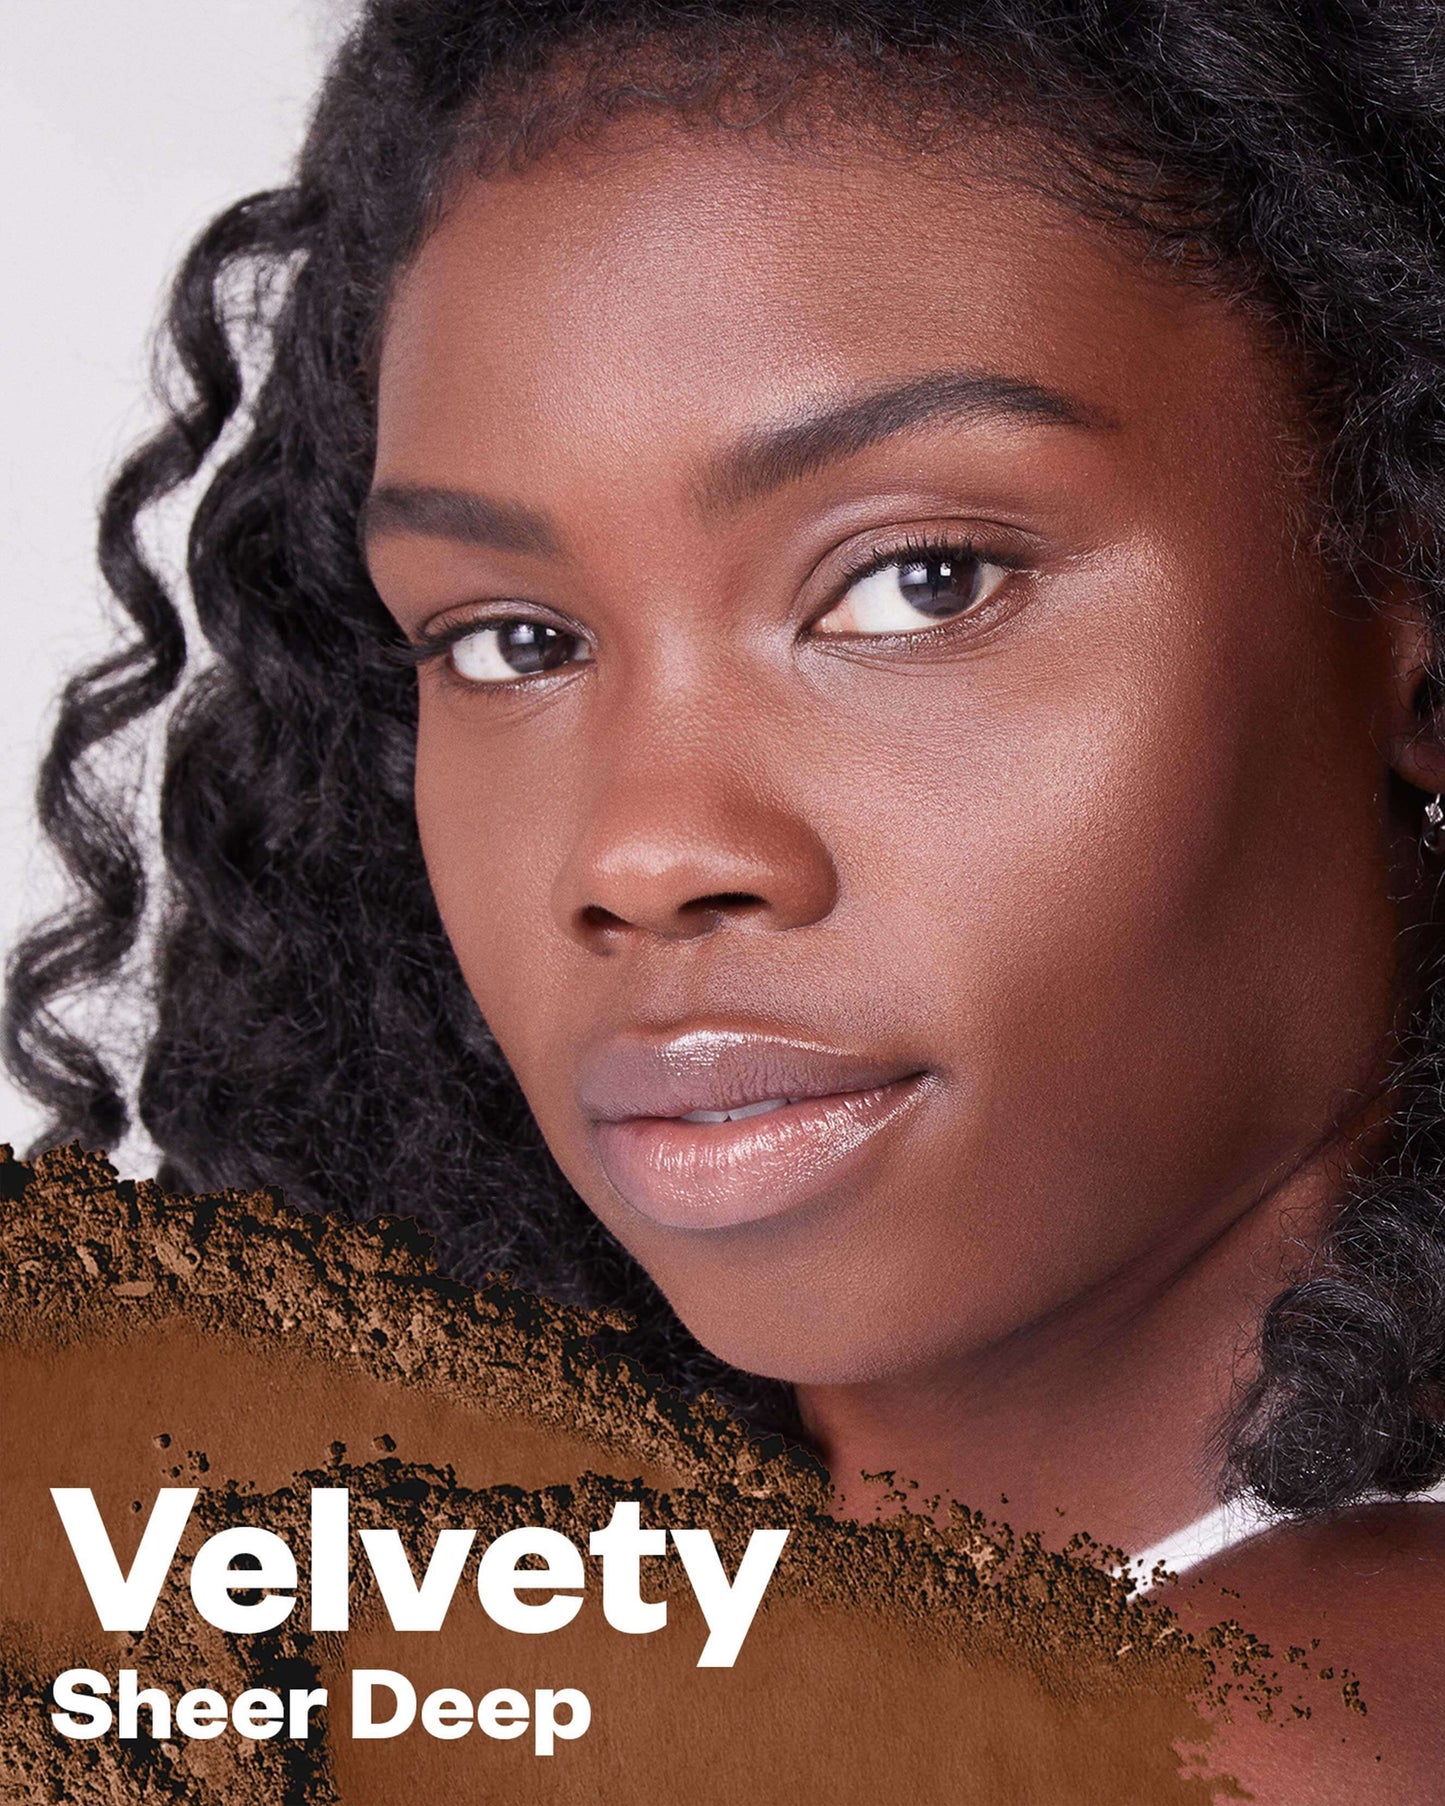 Velvety (sheer deep)